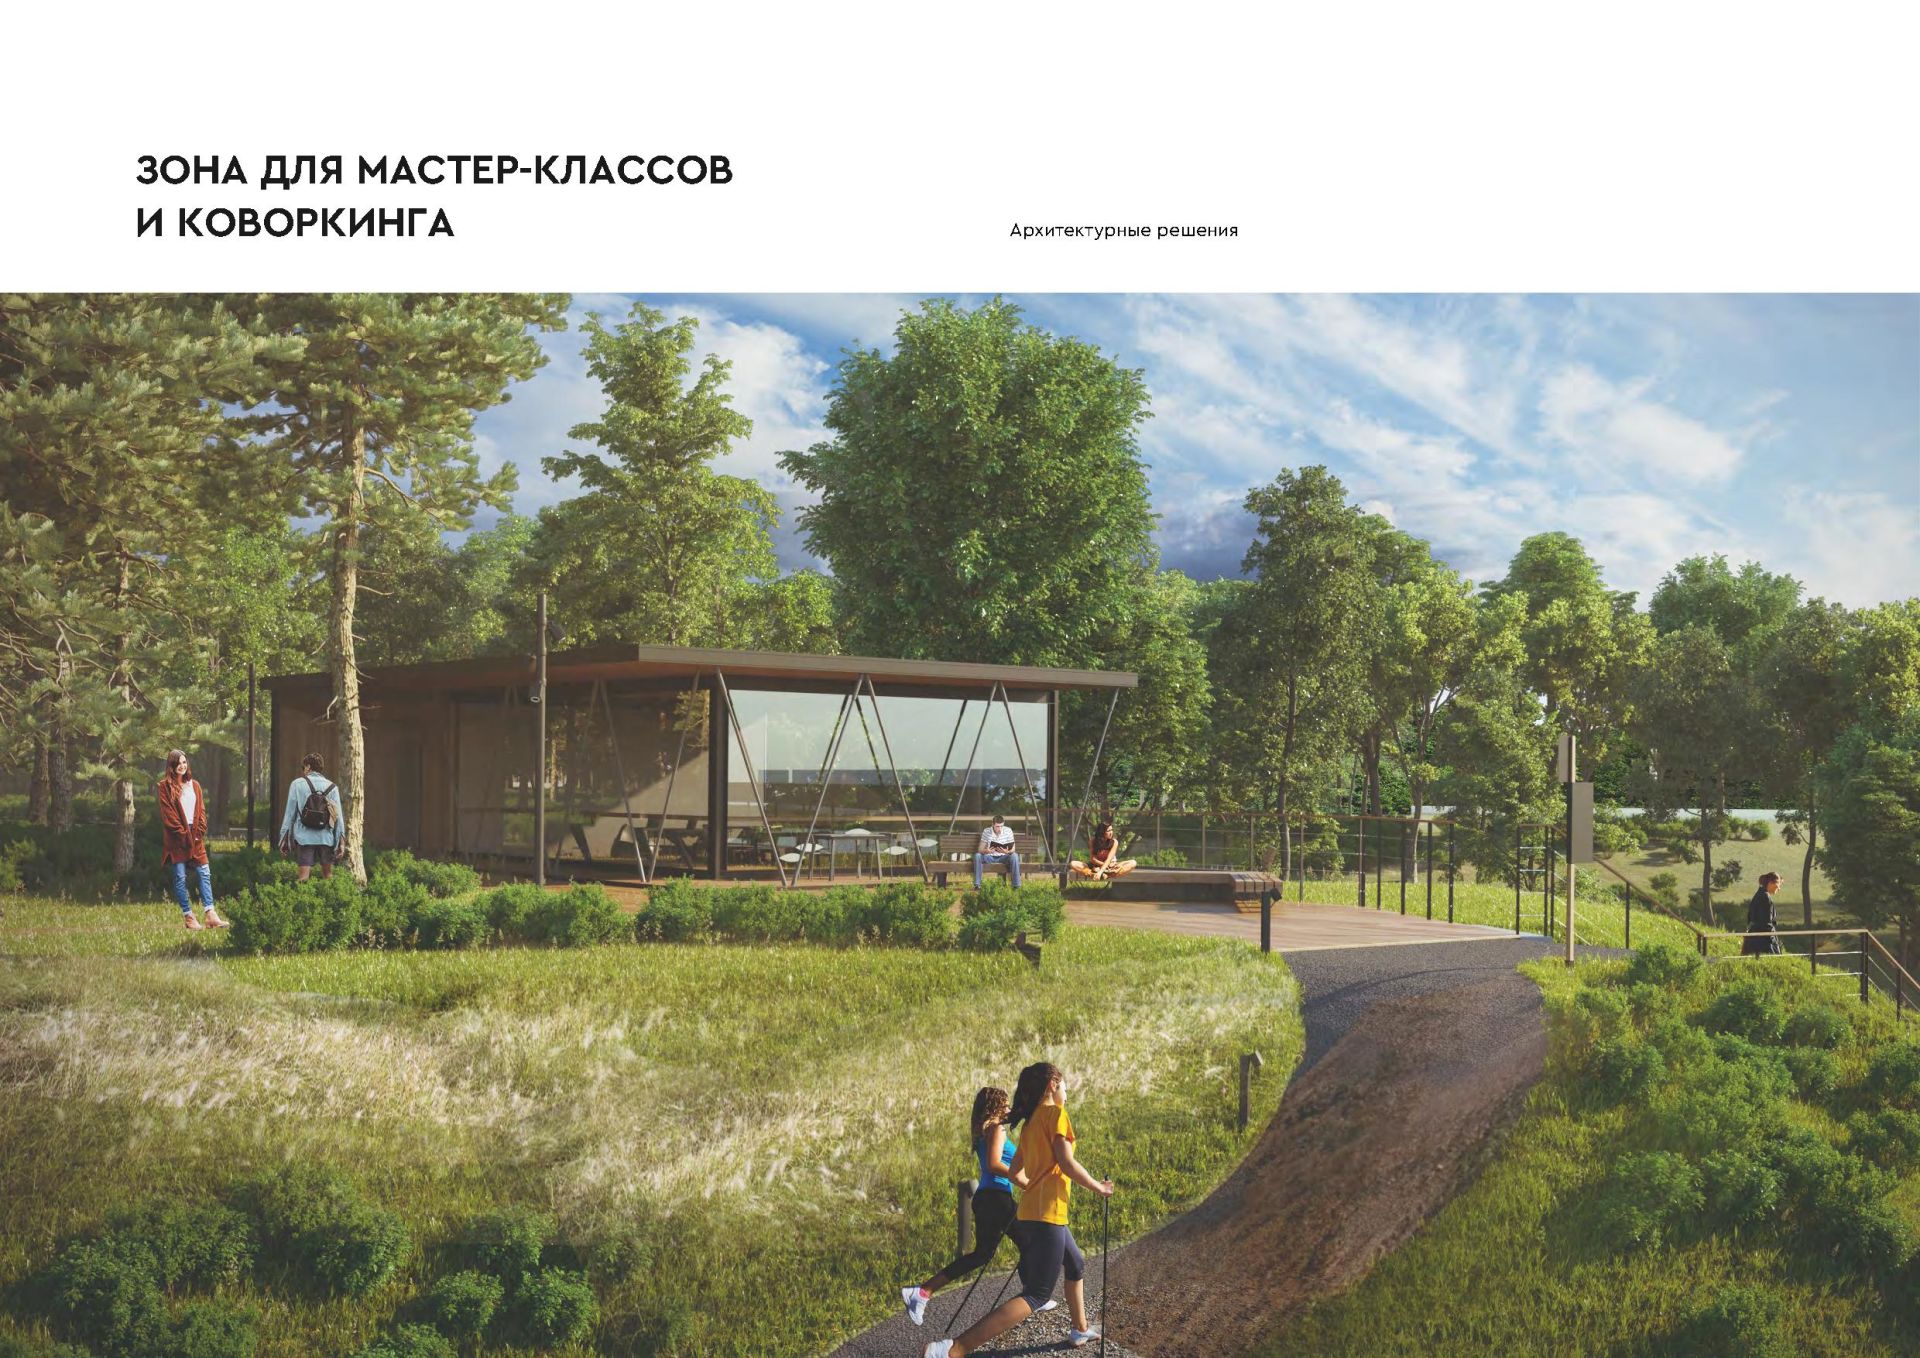 Мензелинский парк вышел в федеральный этап Всероссийского конкурса лучших проектов